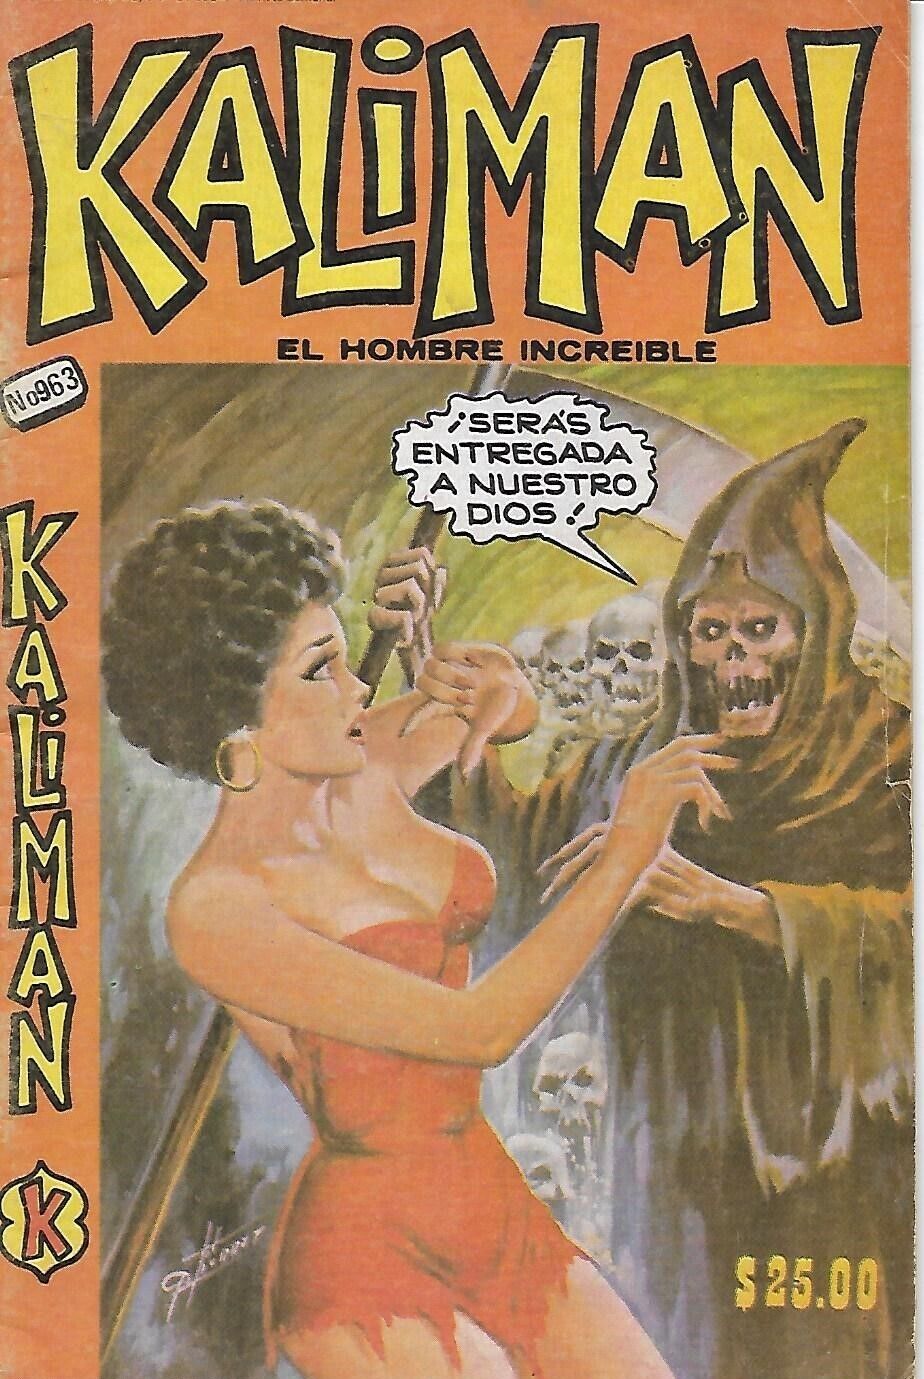 Kaliman El Hombre Increible #963 - Mayo 11, 1984 - Mexico